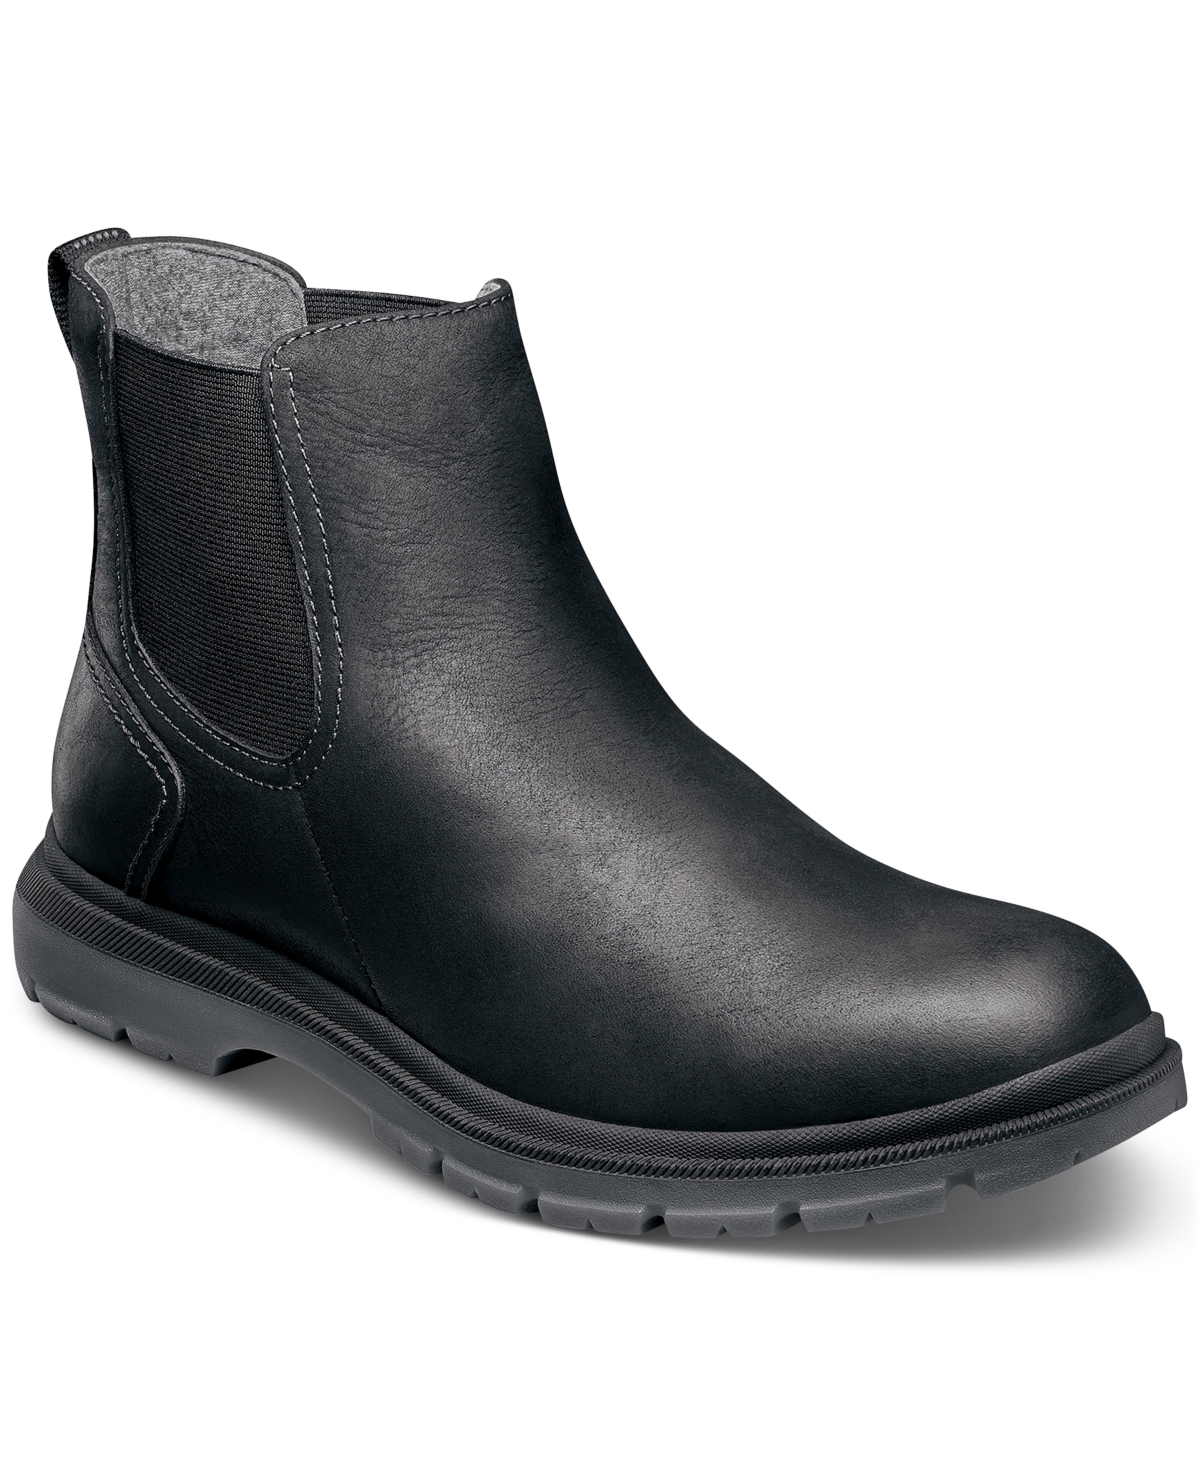 Men's Lookout Plain Toe Water Resistant Leather Gore Boots - Black